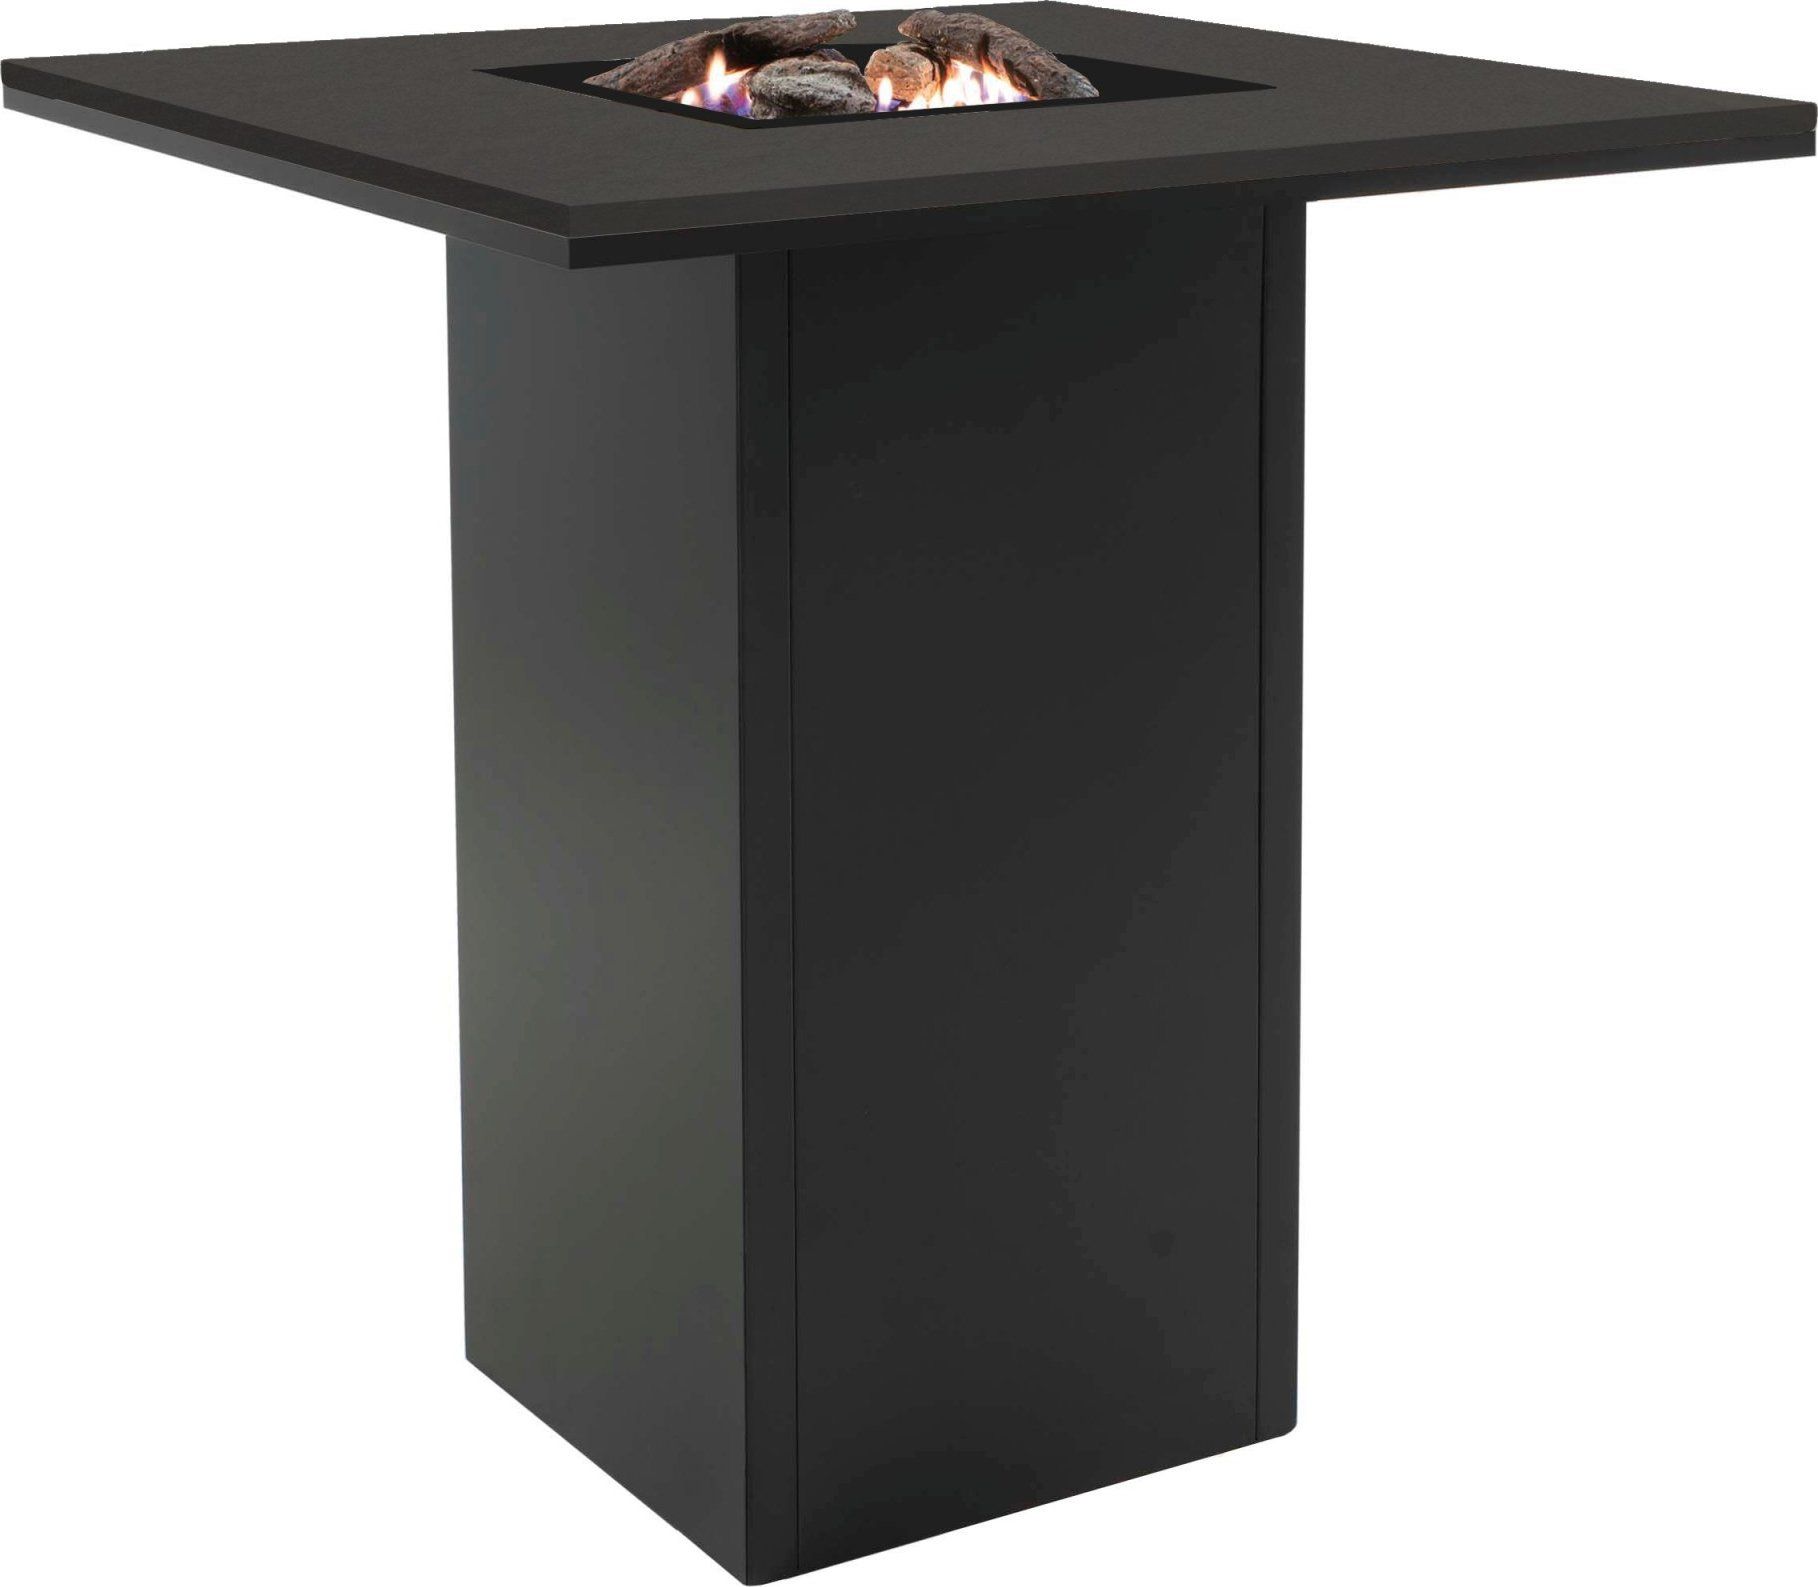 Stůl s plynovým ohništěm COSI- typ Cosiloft barový stůl černý rám / černá deska Mdum - M DUM.cz